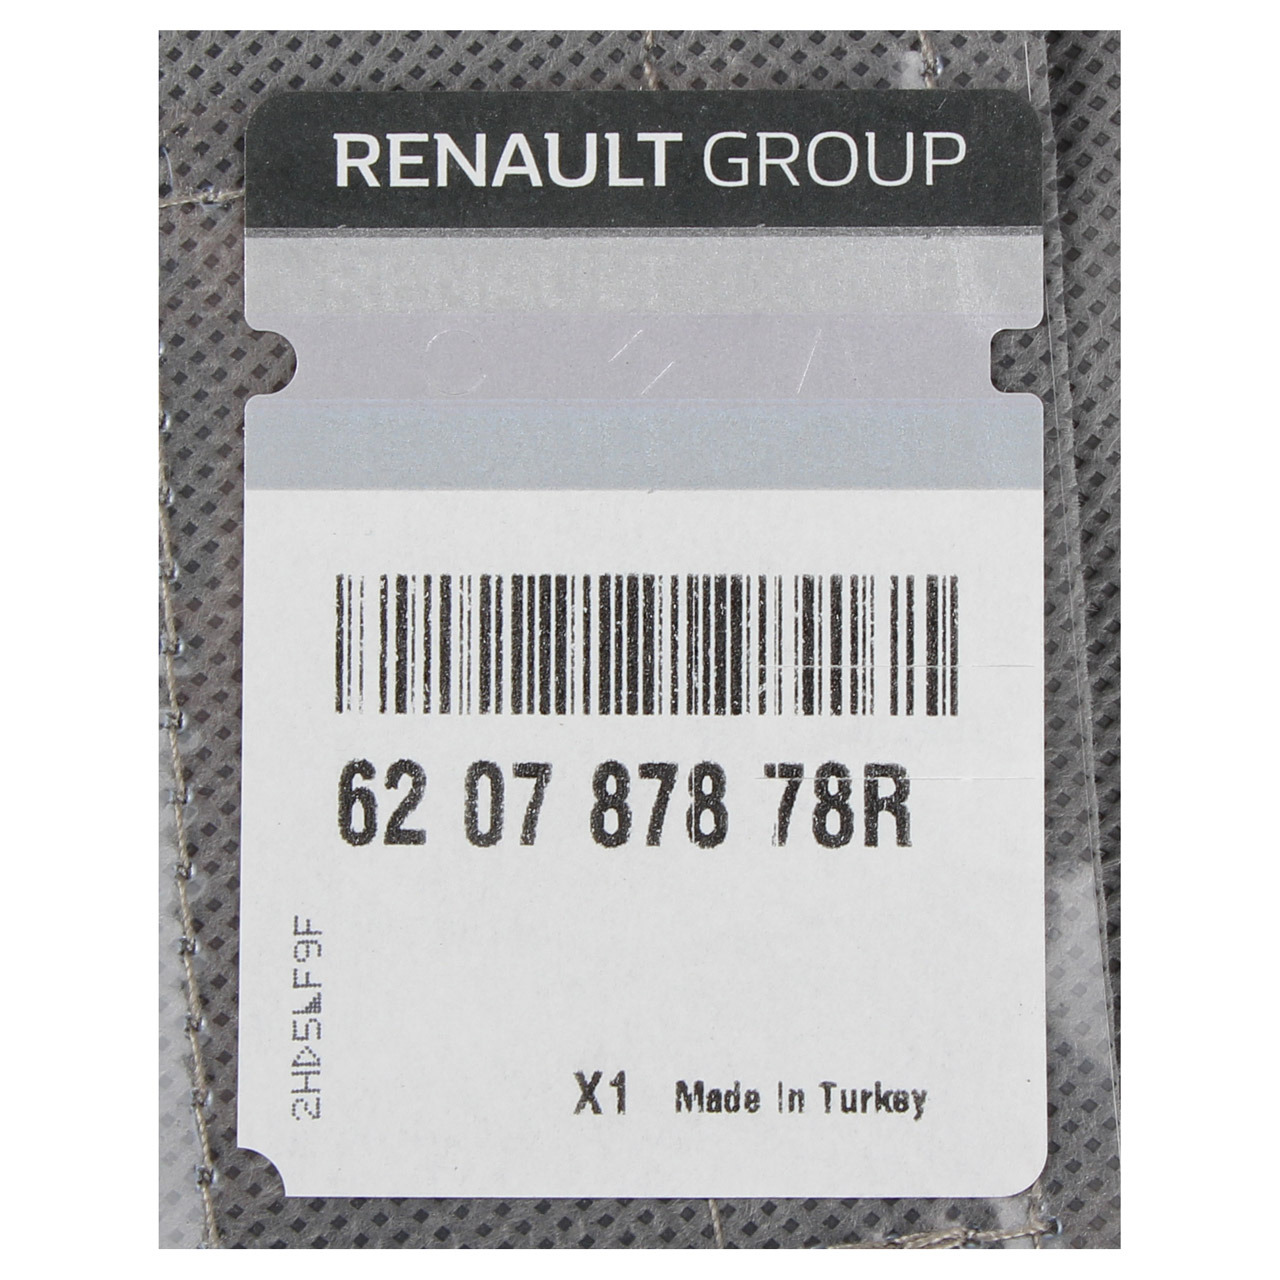 ORIGINAL Renault Zierleiste Stoßstange Frontgrill Clio 4 vorne mitte 620787878R